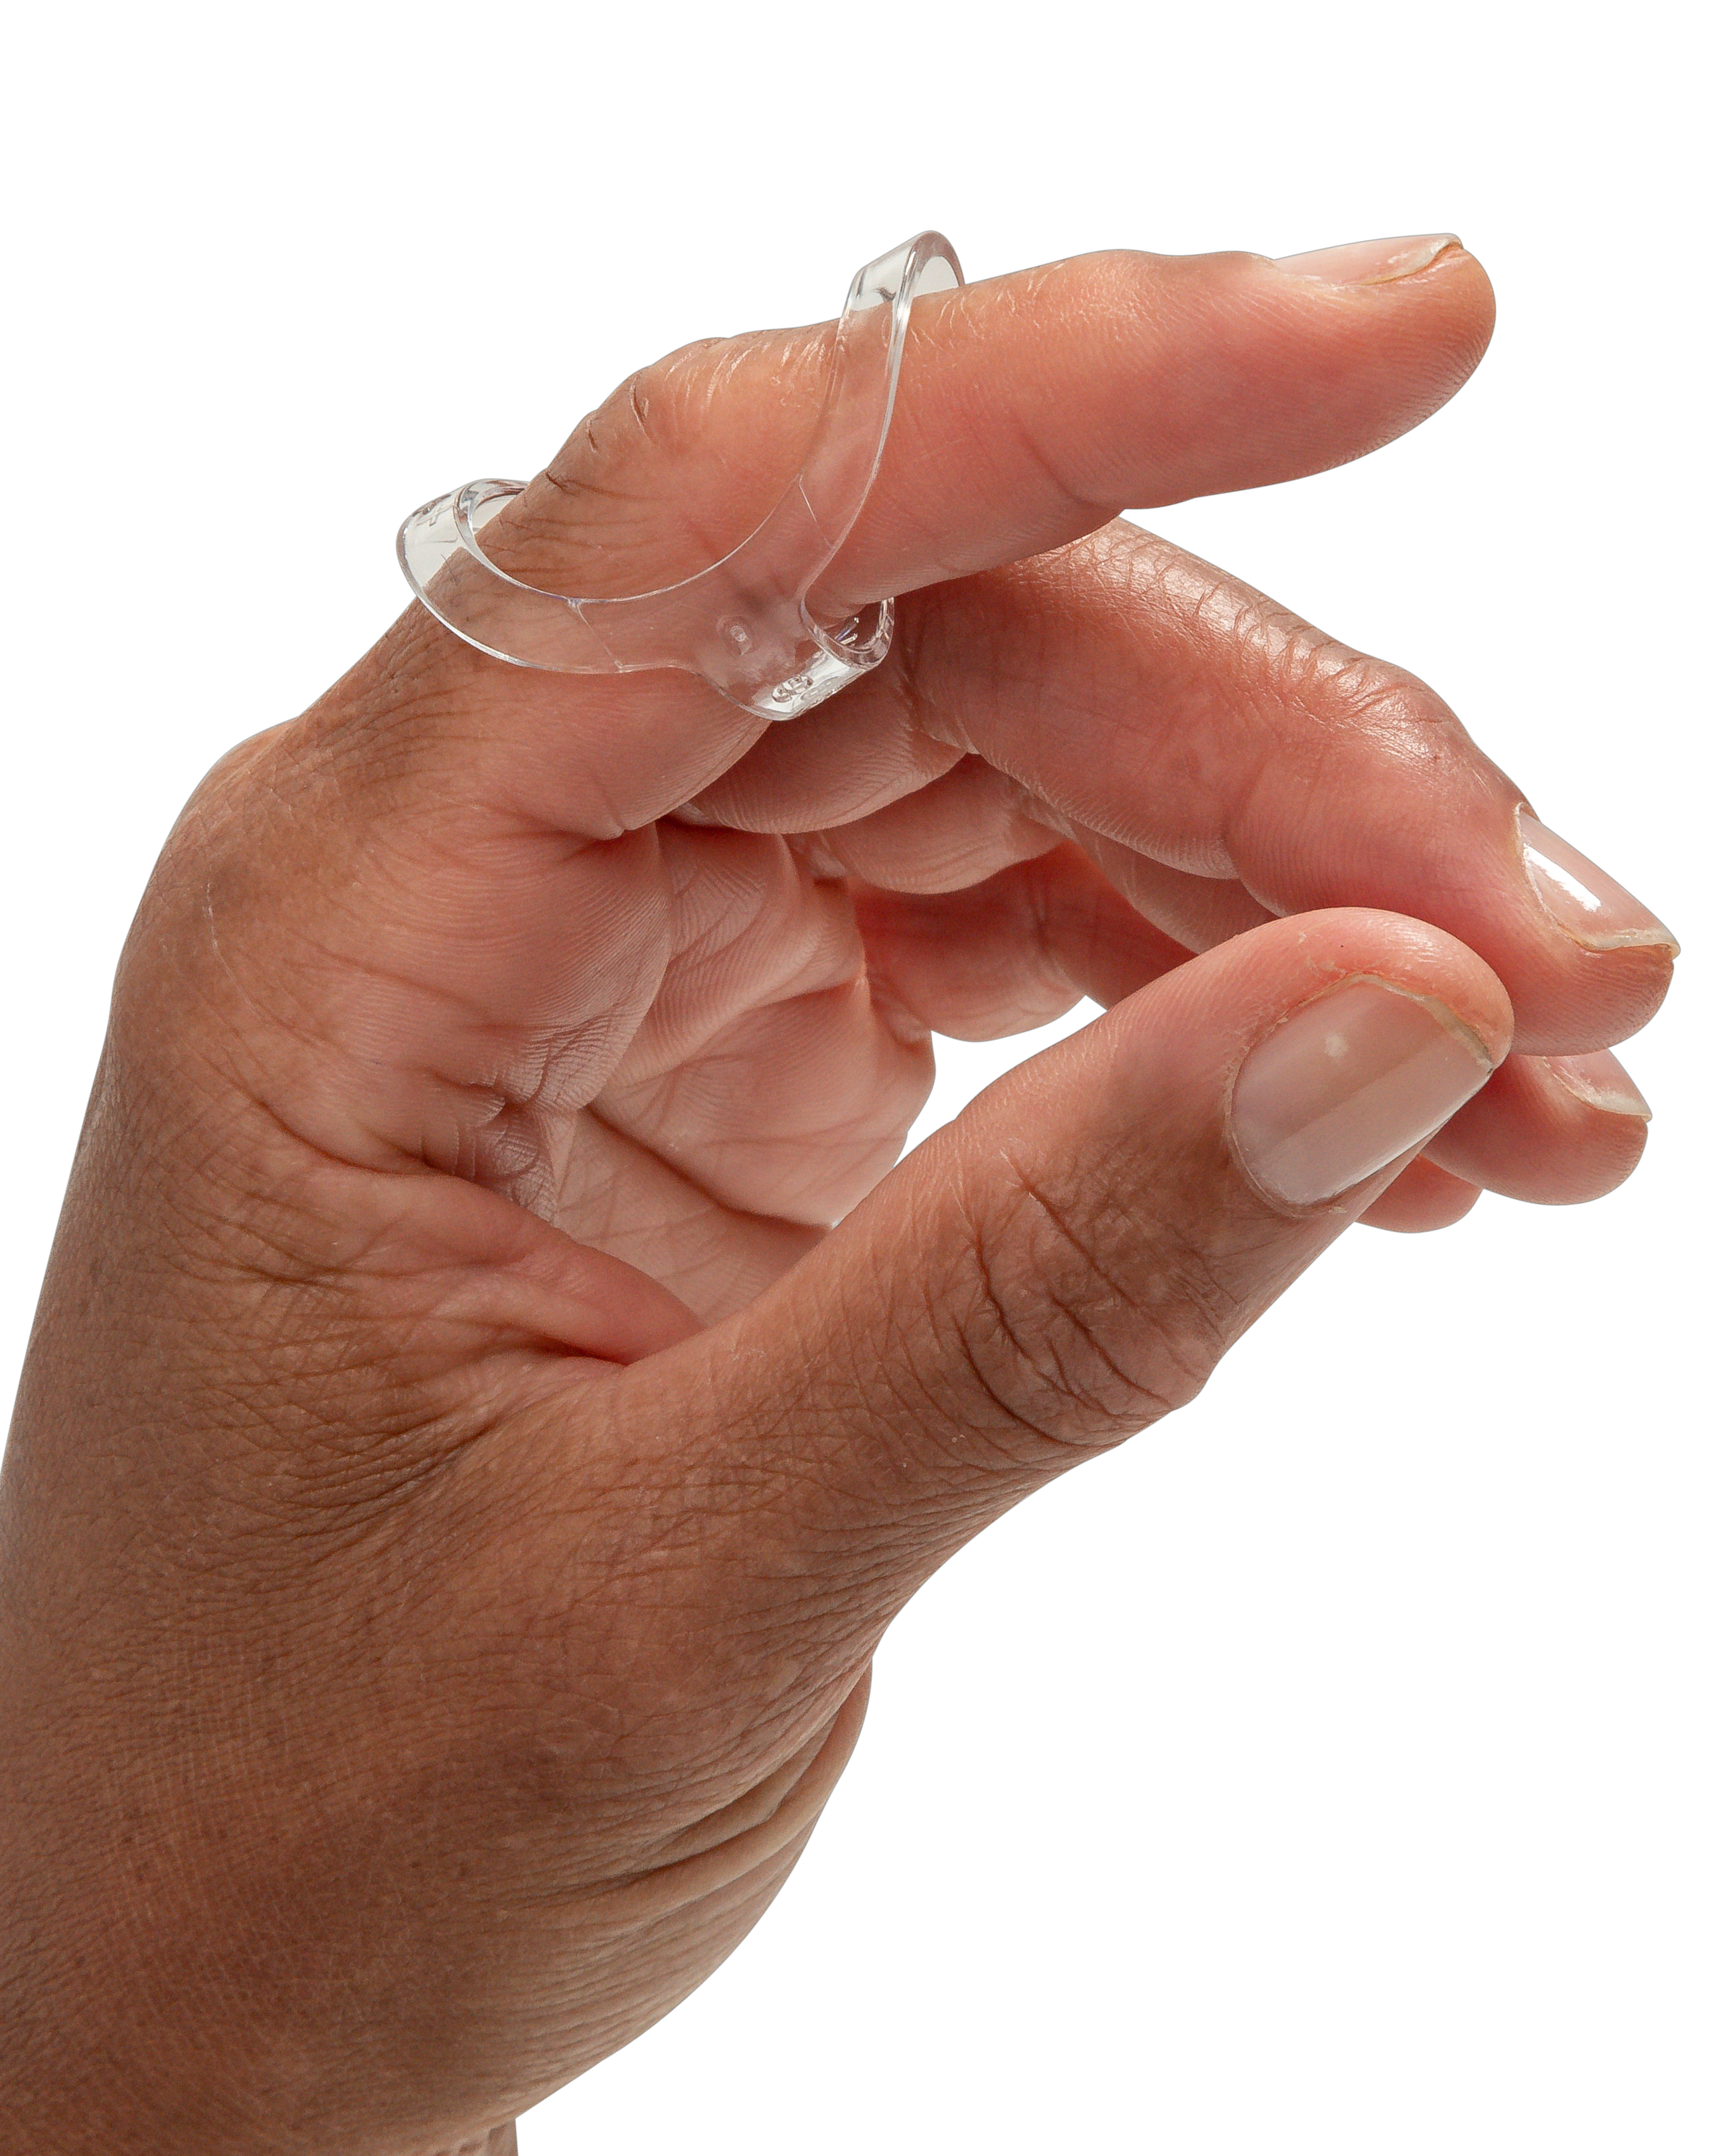 Oval-8 CLEAR Finger Splints